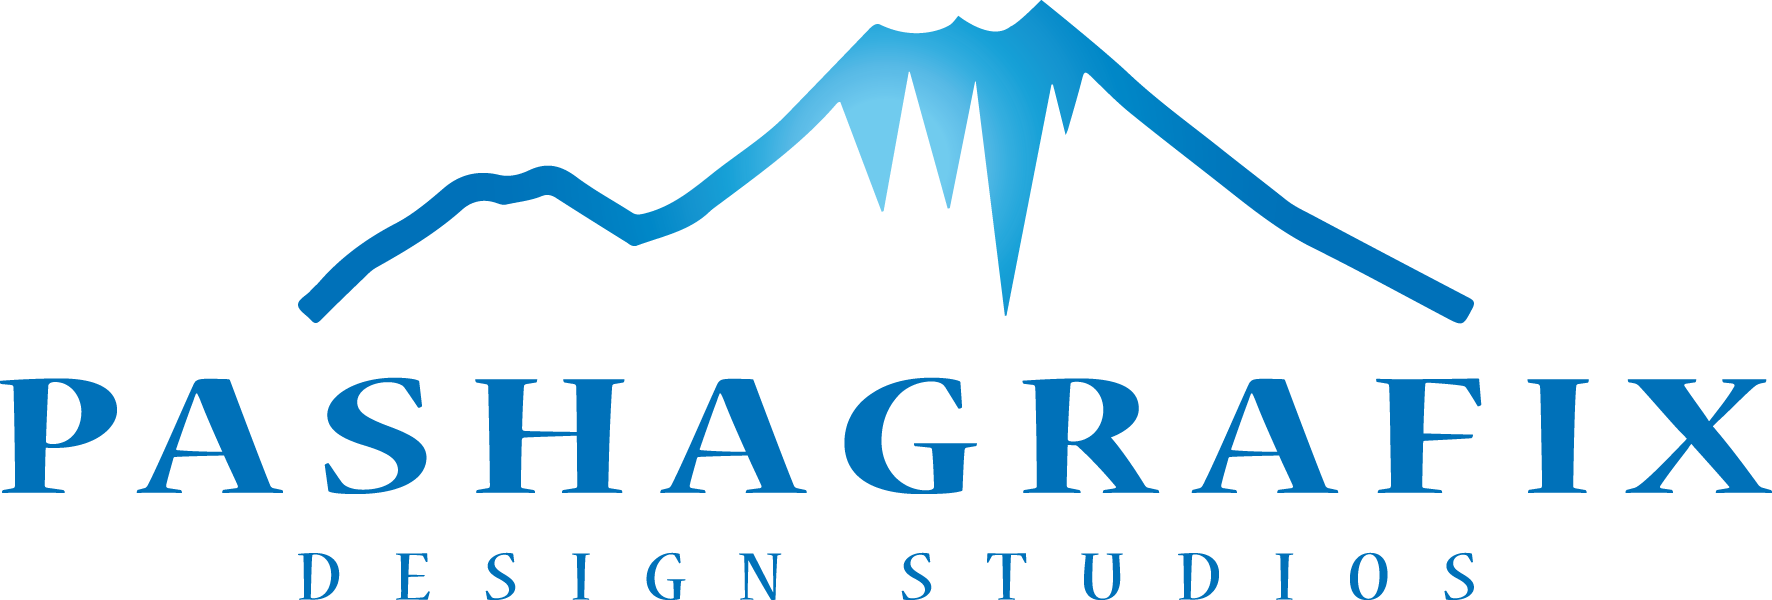 Pashagrafix Design Studios